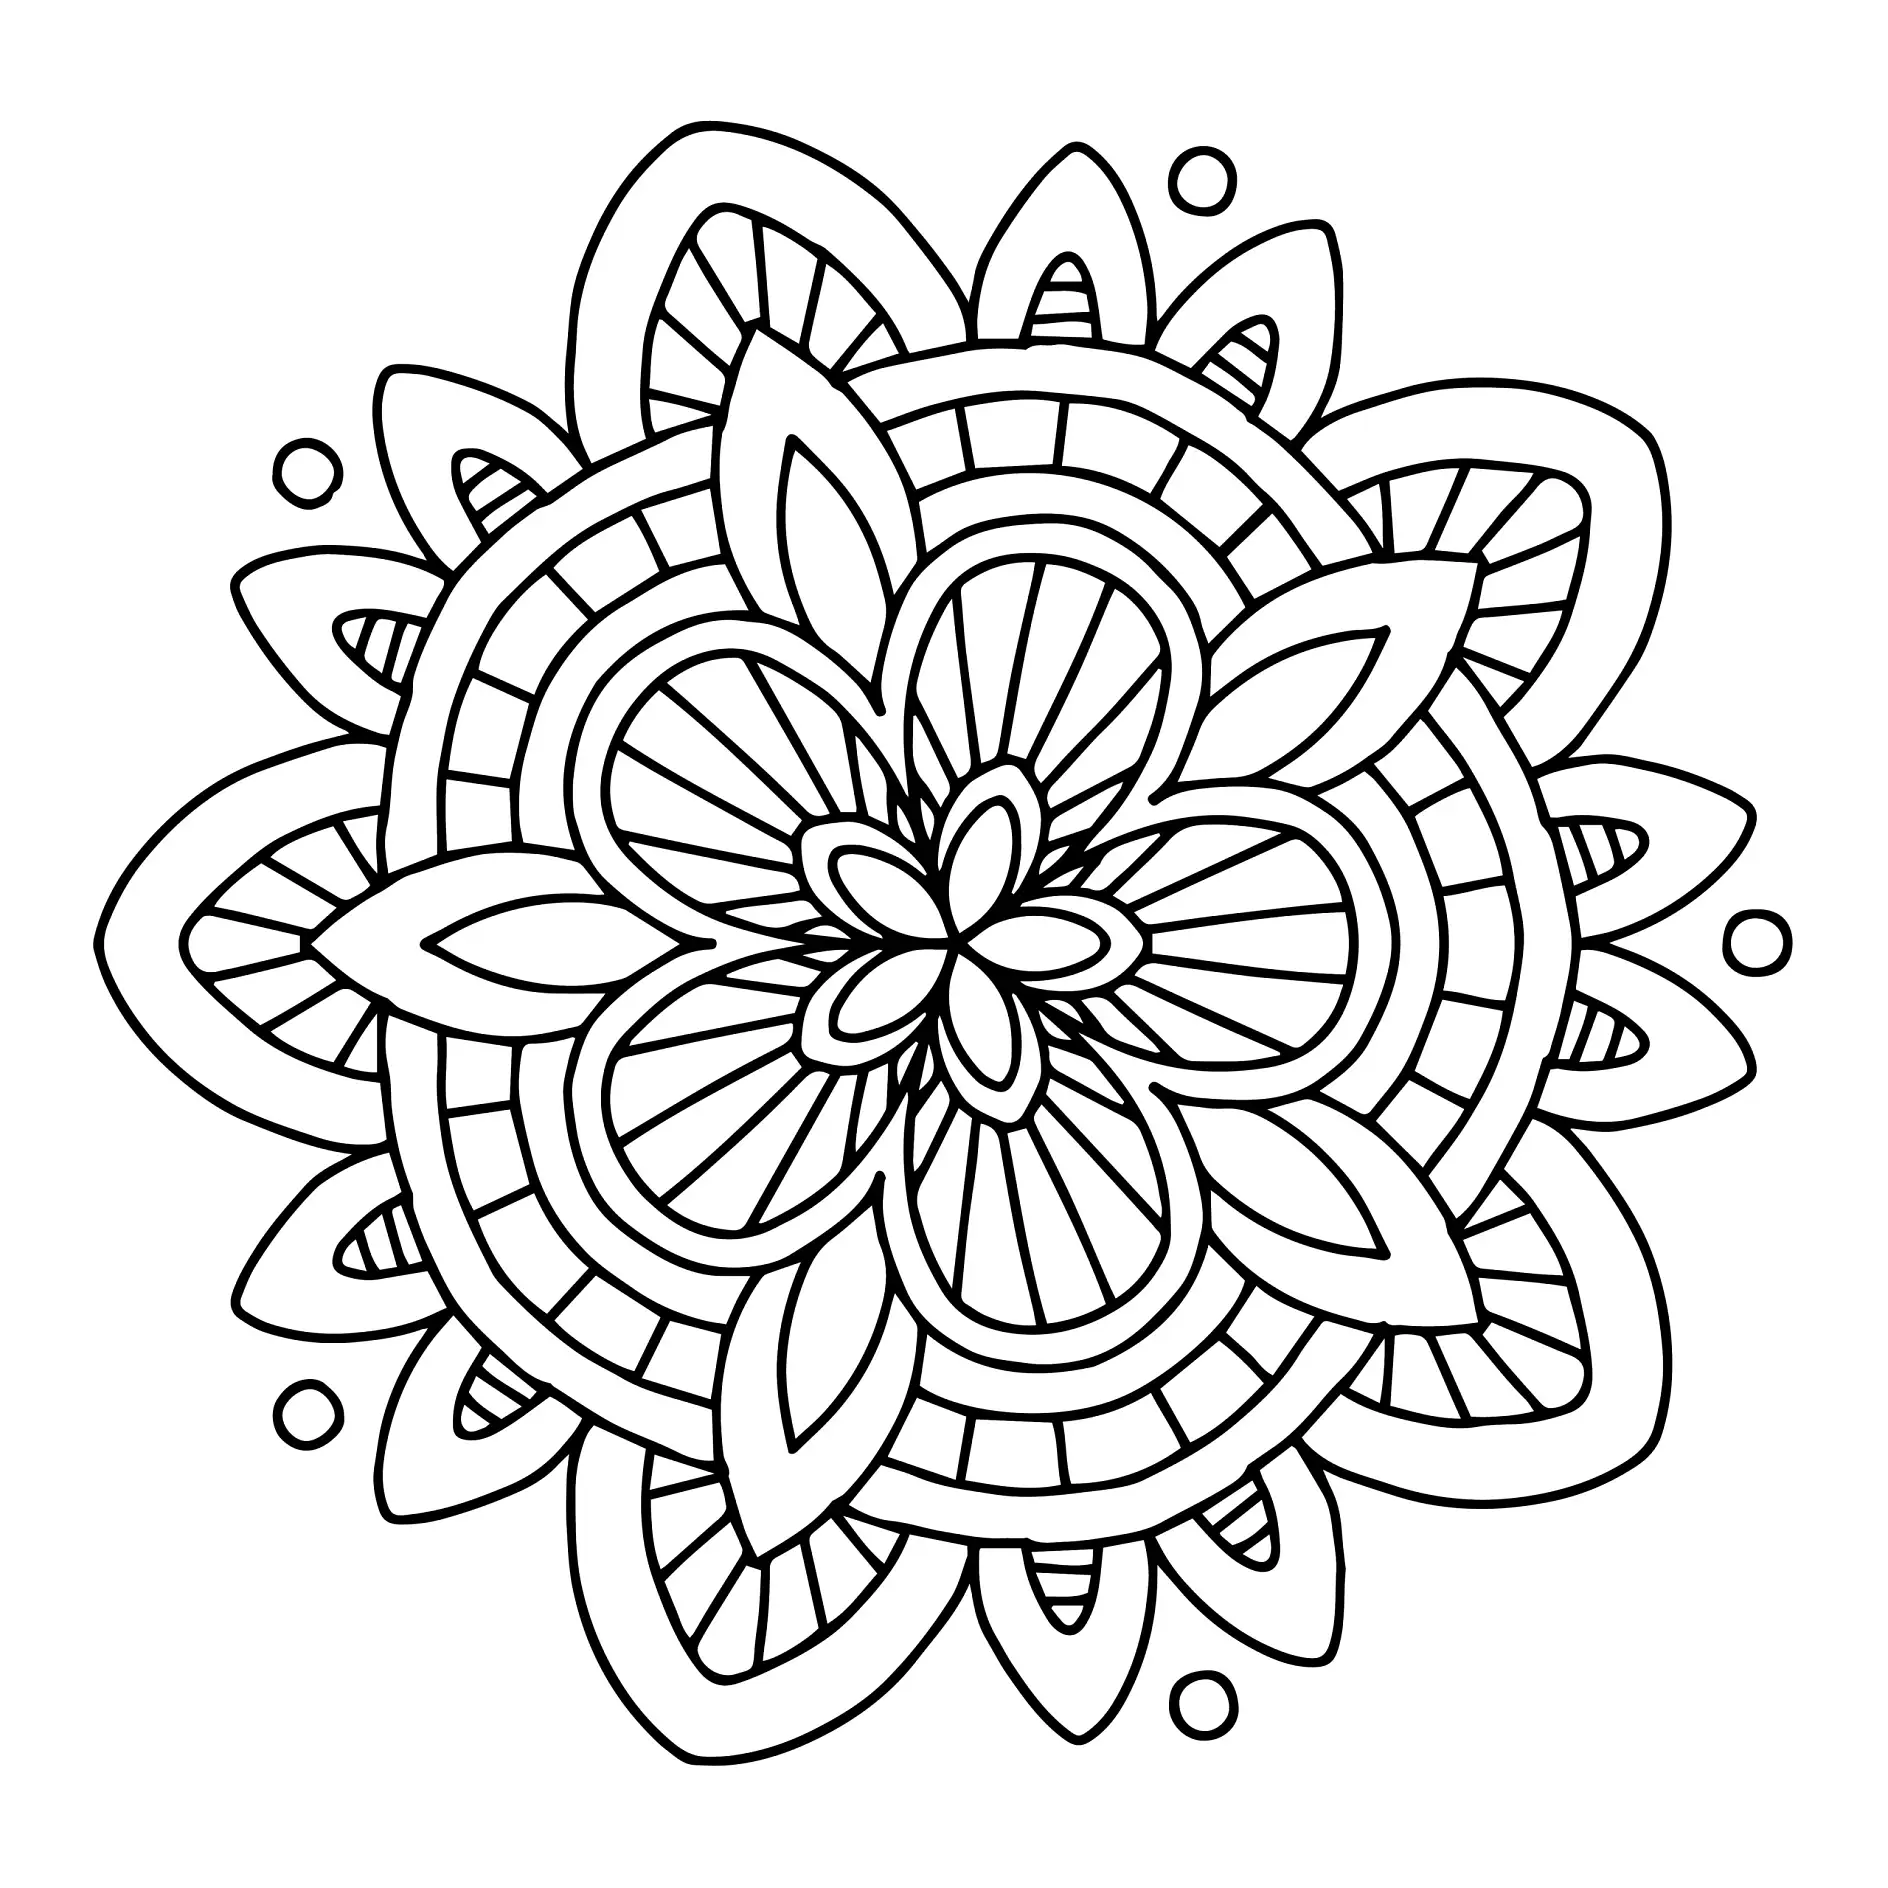 Ausmalbild Mandala mit blumenähnlichen Mustern und Blättern